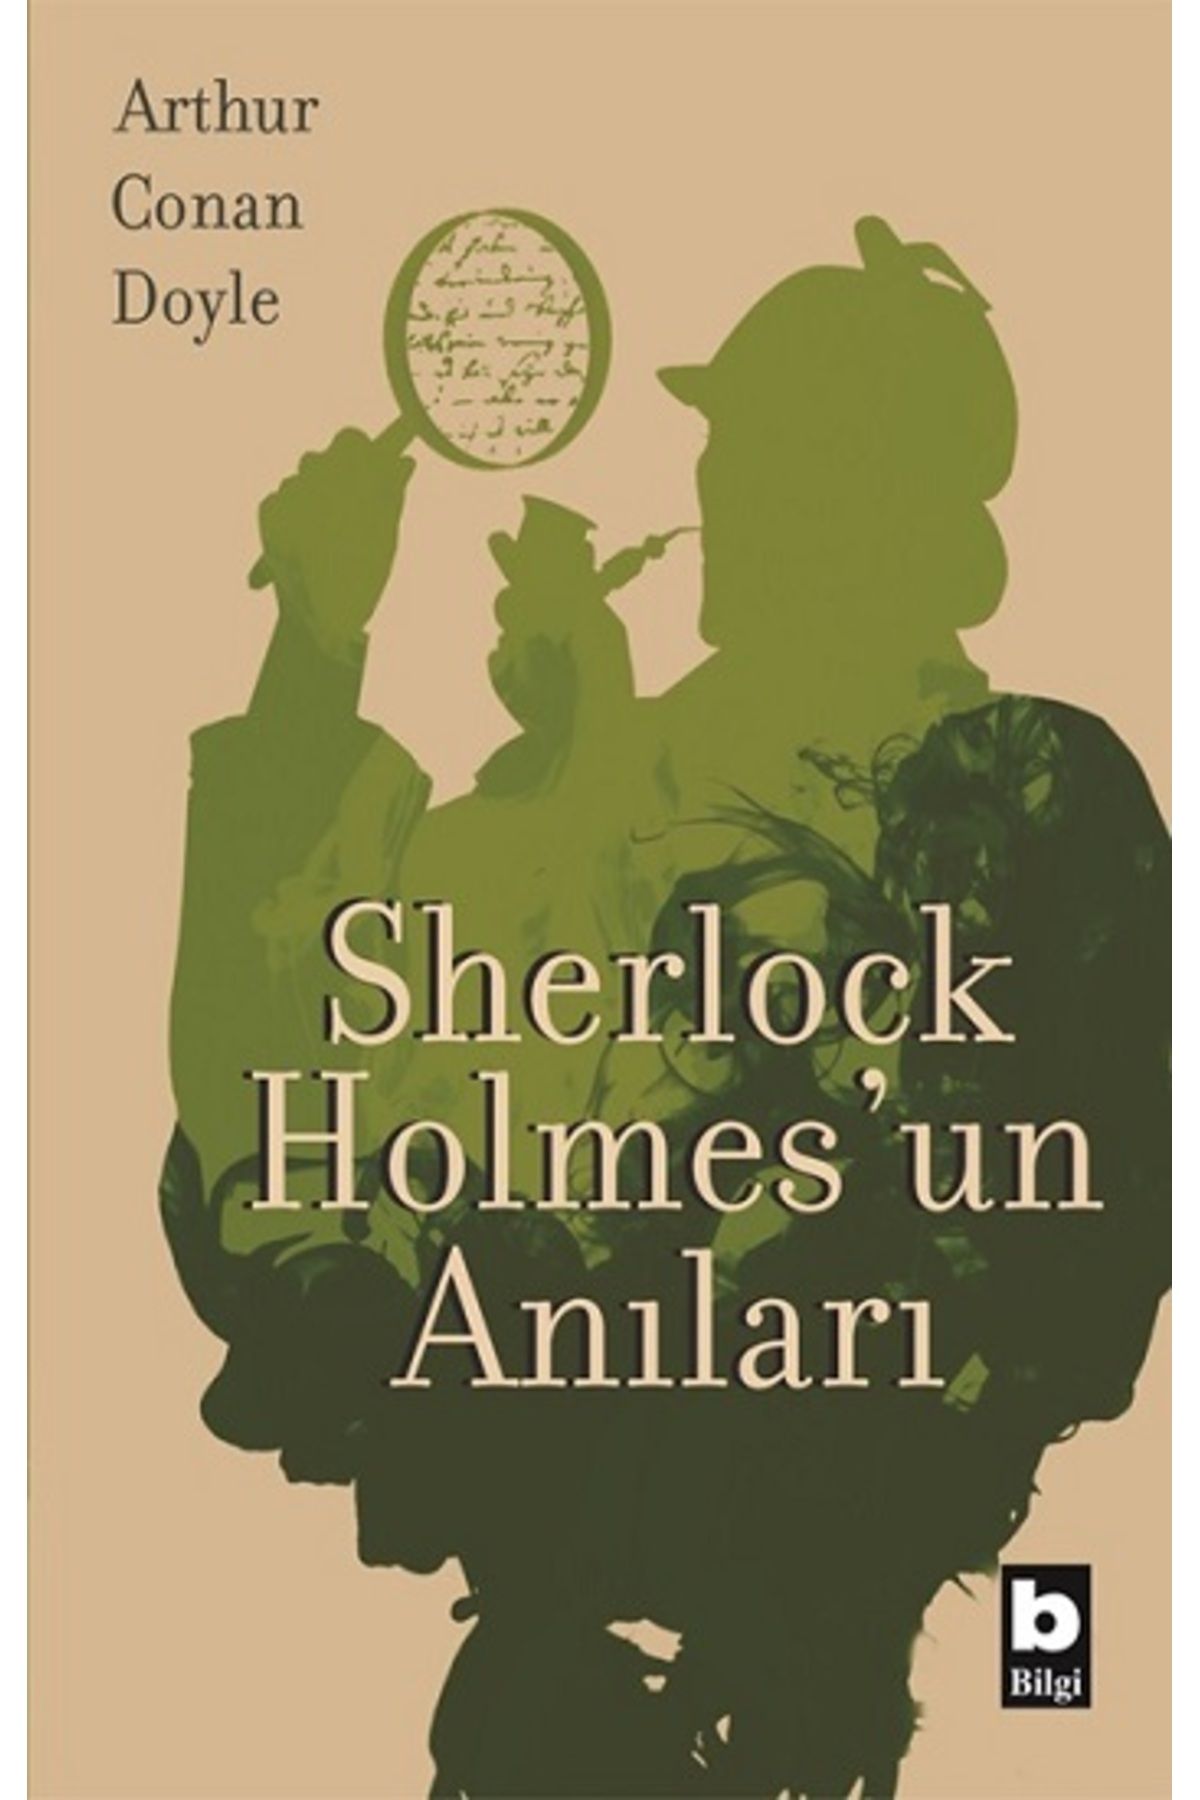 Bilgi Yayınları Sherlock Holmes'un Anıları